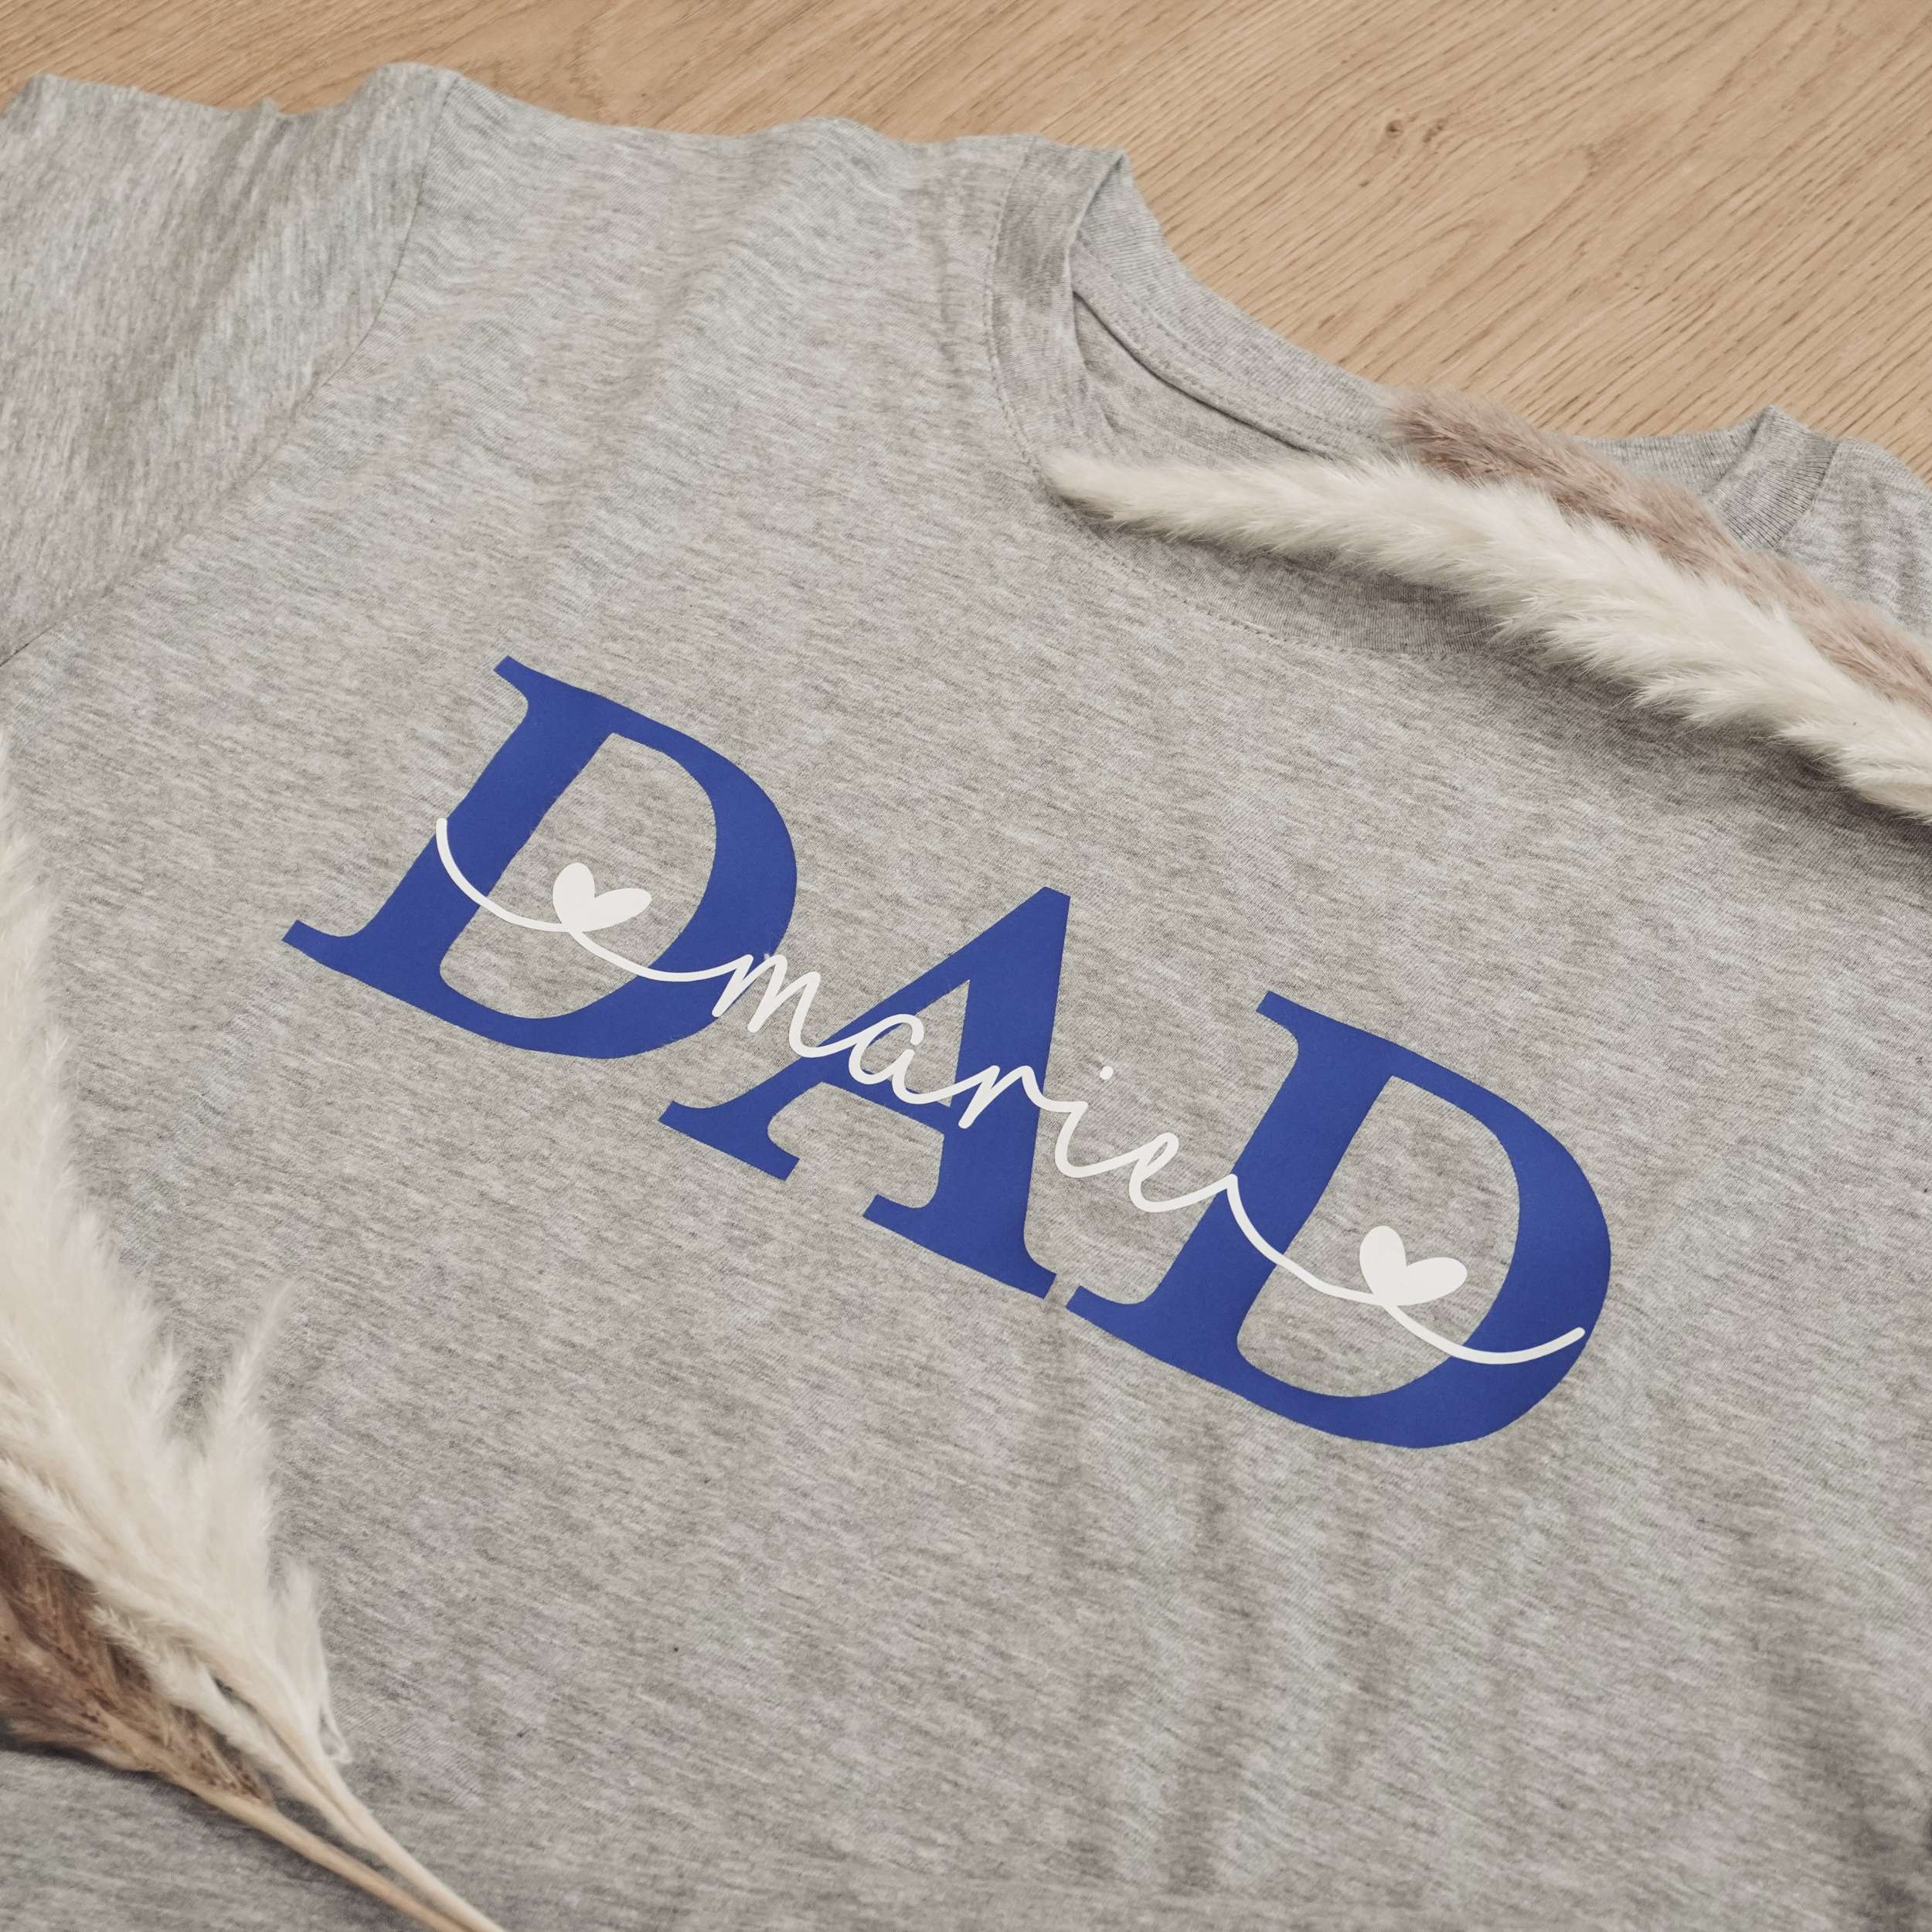 Unser T-Shirt "Dad" personalisiert mit den Namen der Kinder ist das perfekte Geschenk für den lieben Papa!